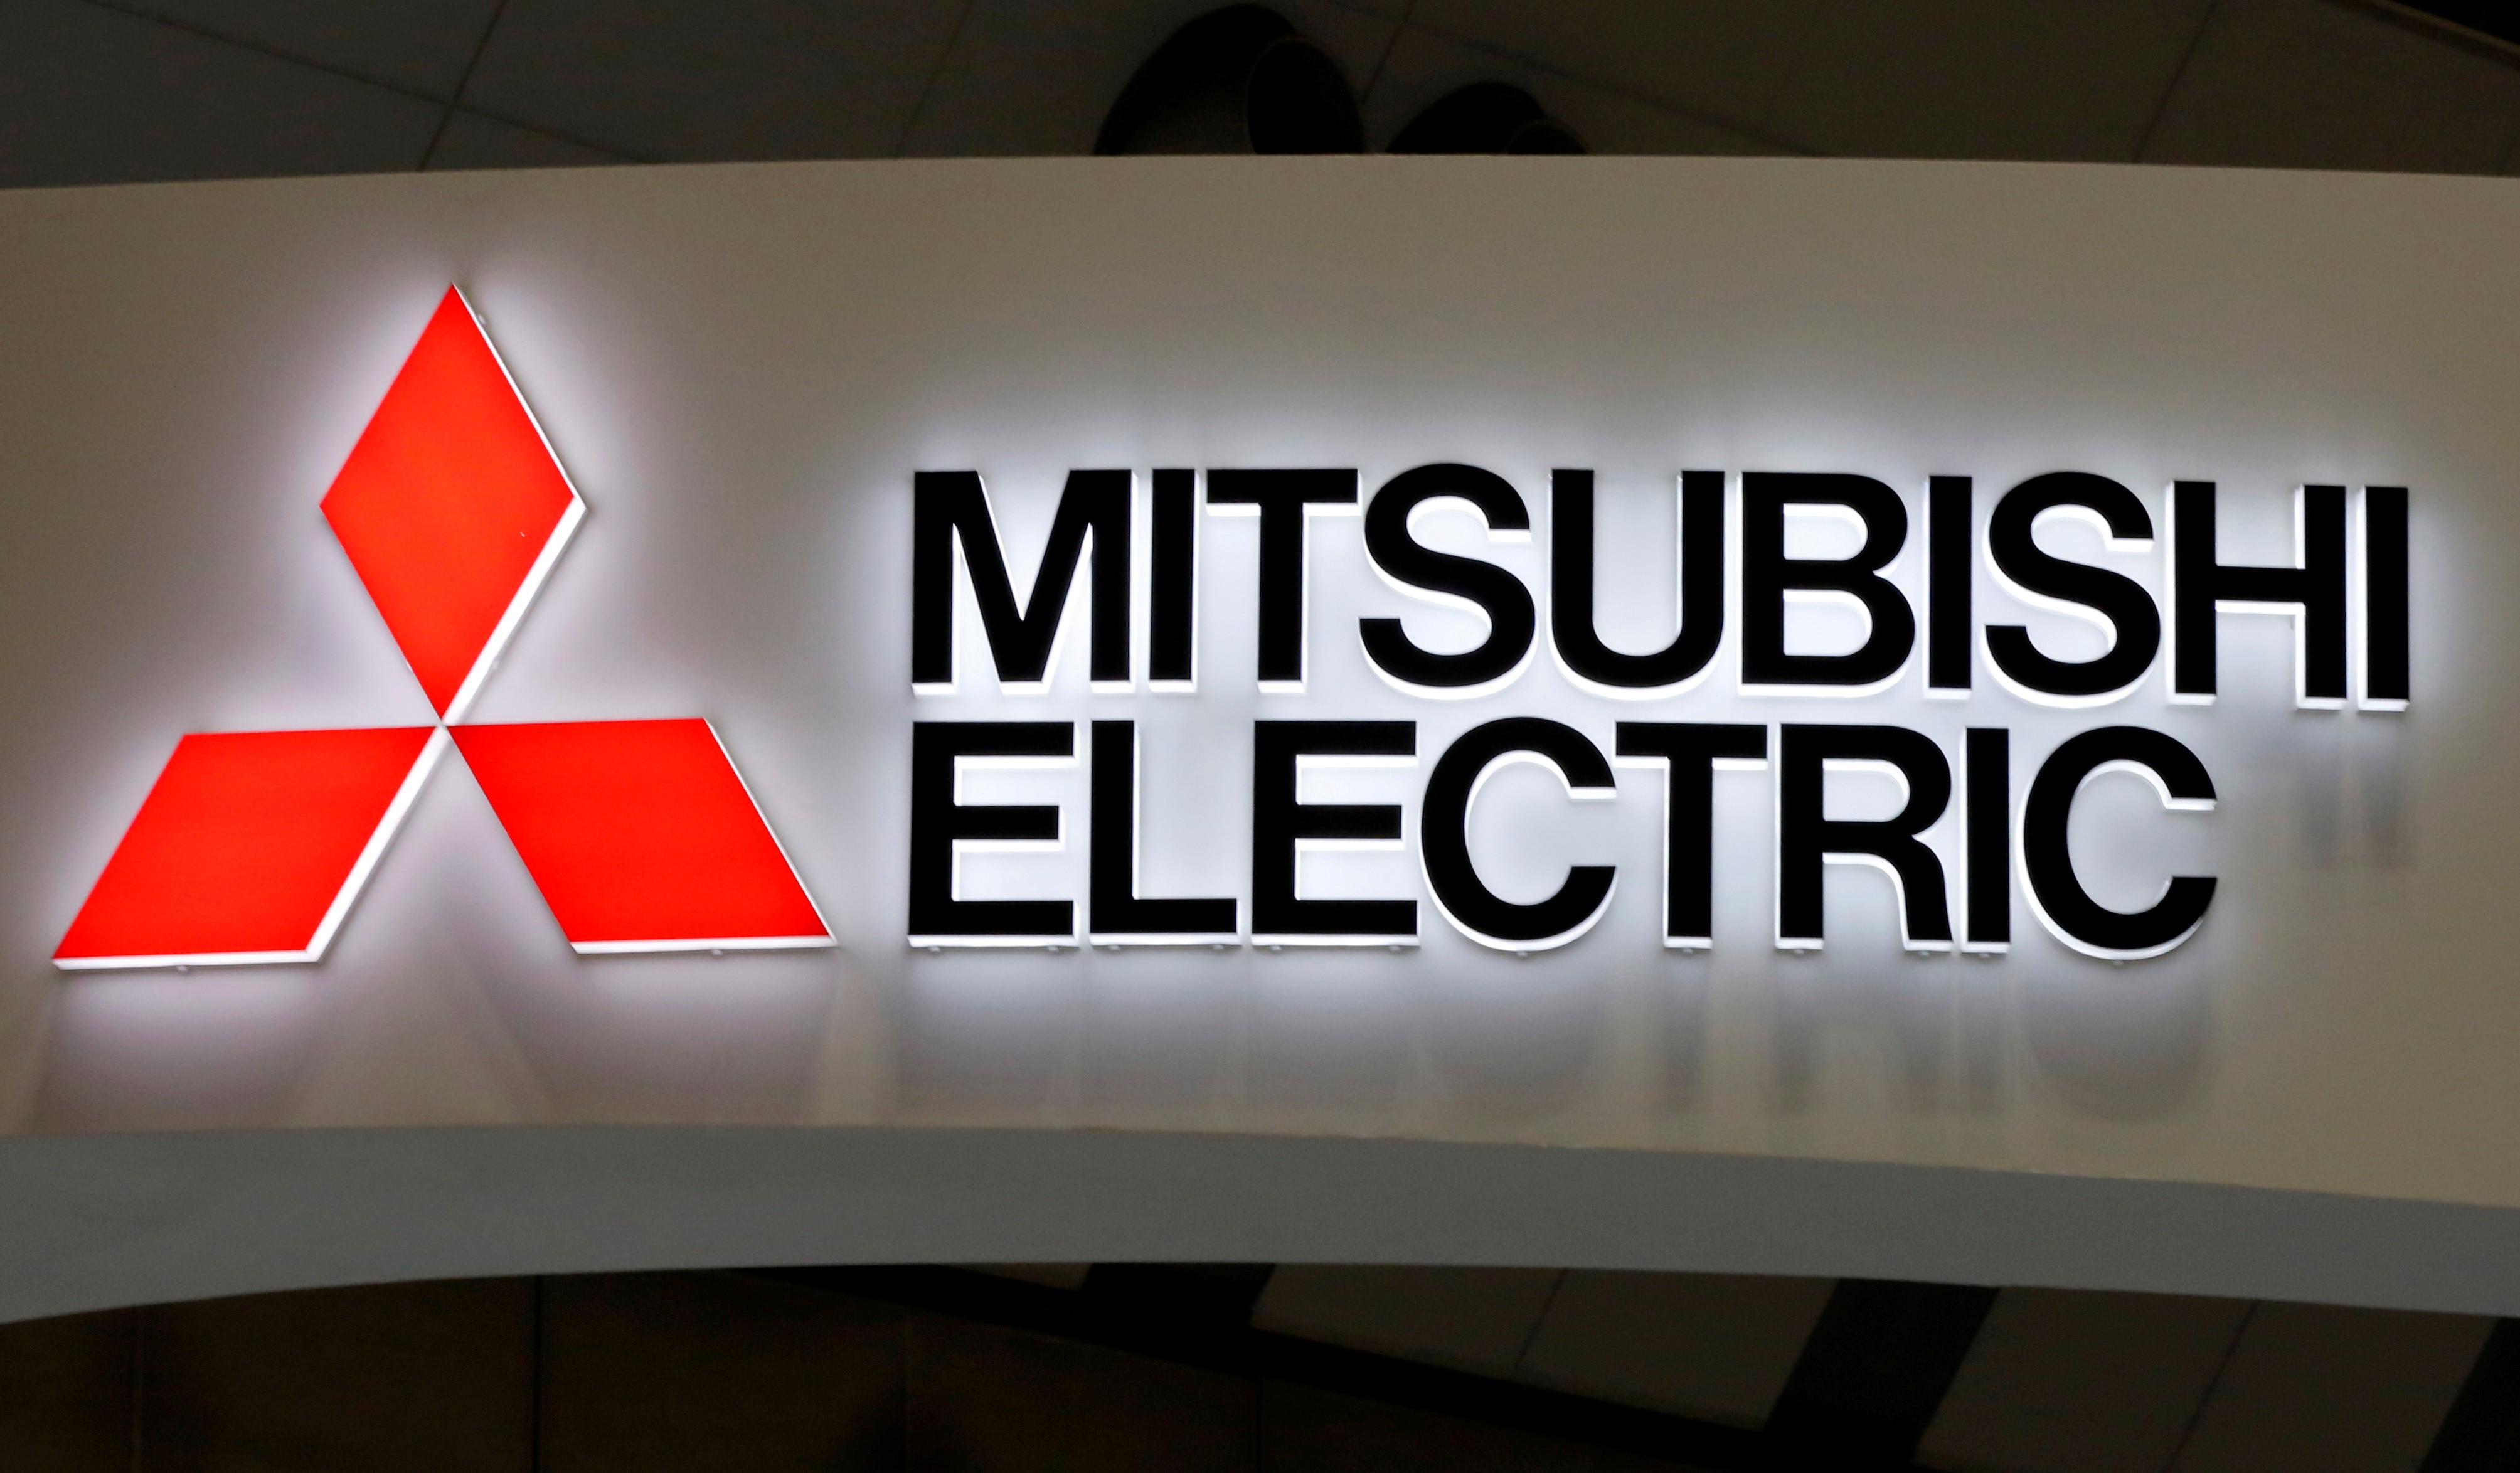 Presidente da Mitsubishi Electric renuncia após manipulação de dados de inspeções thumbnail